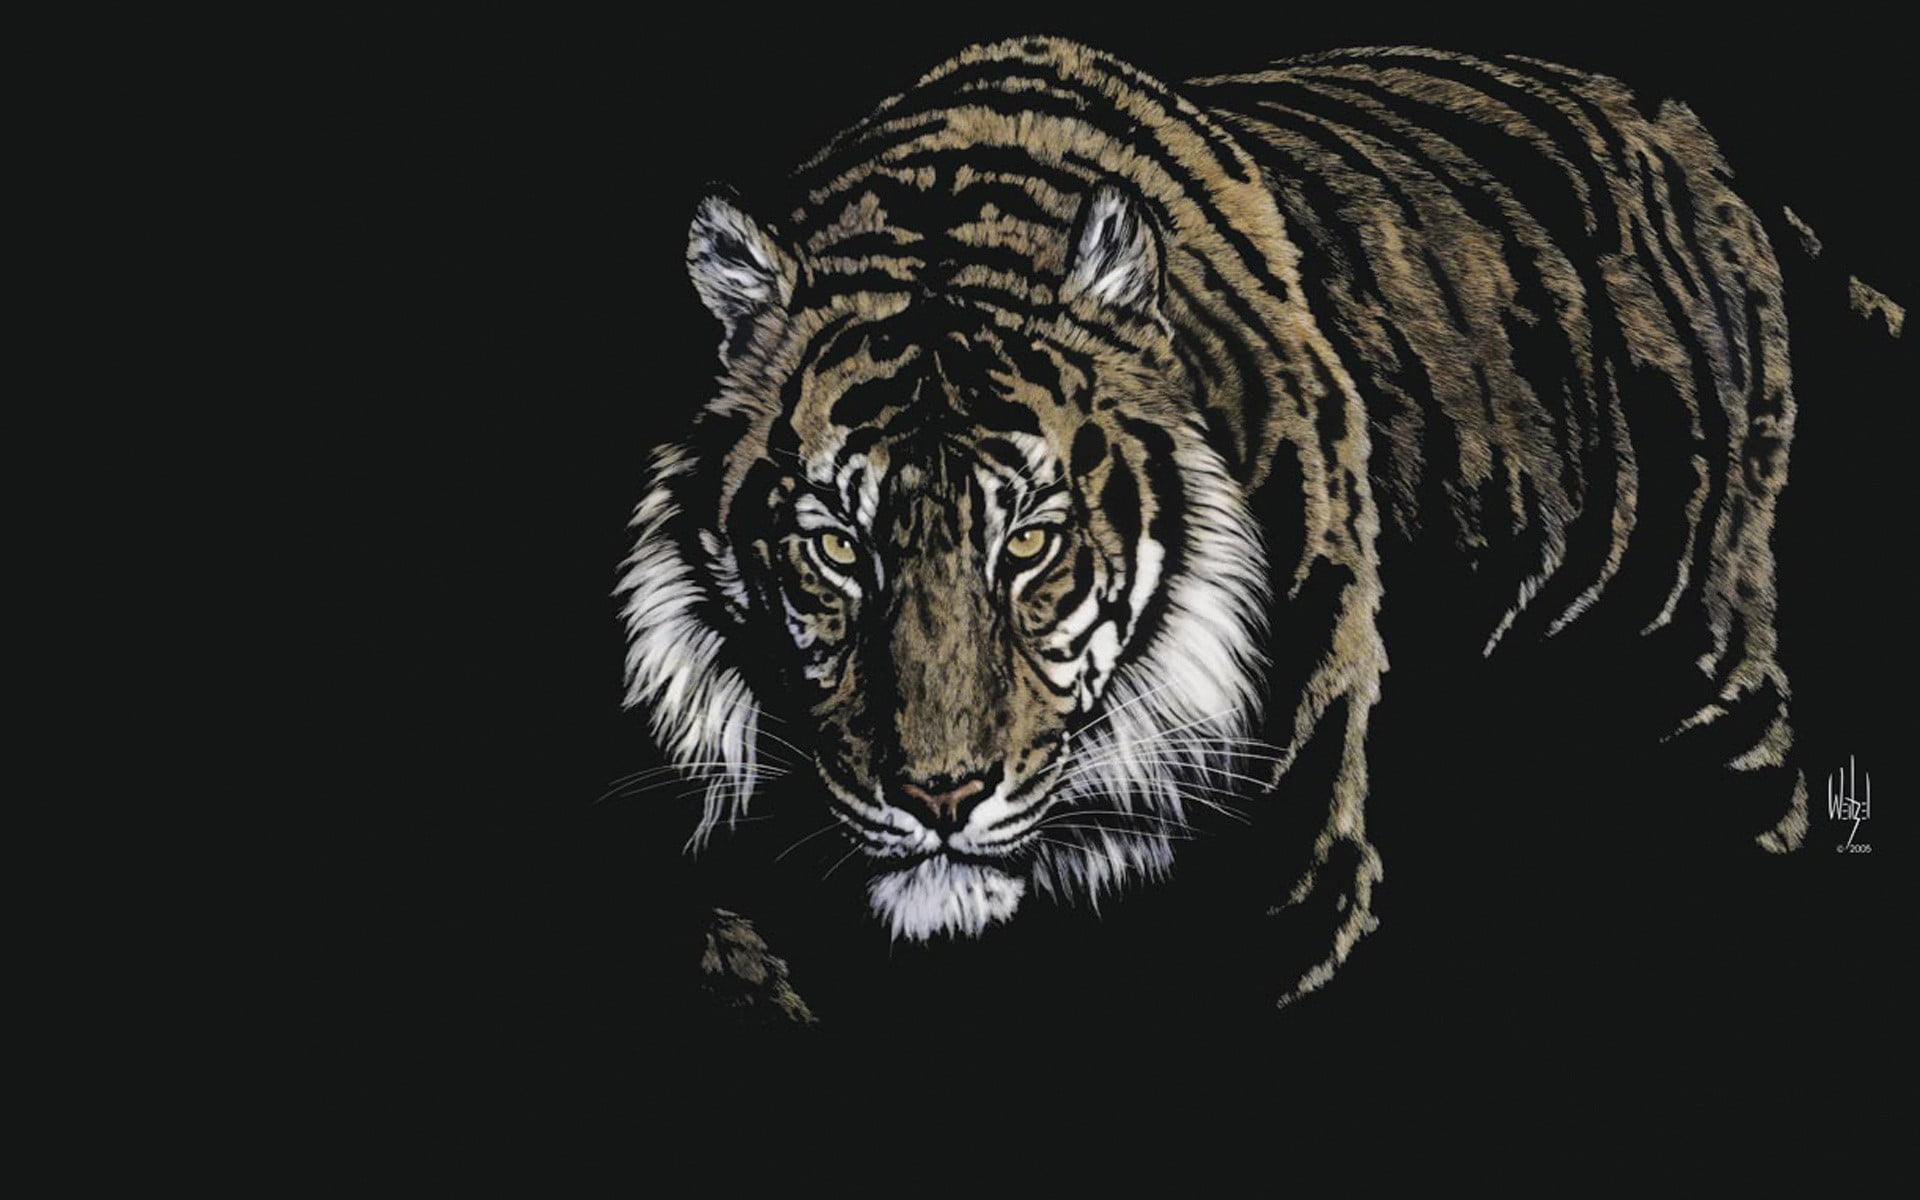 Download Gambar Hd Wallpapers Black Tiger terbaru 2020